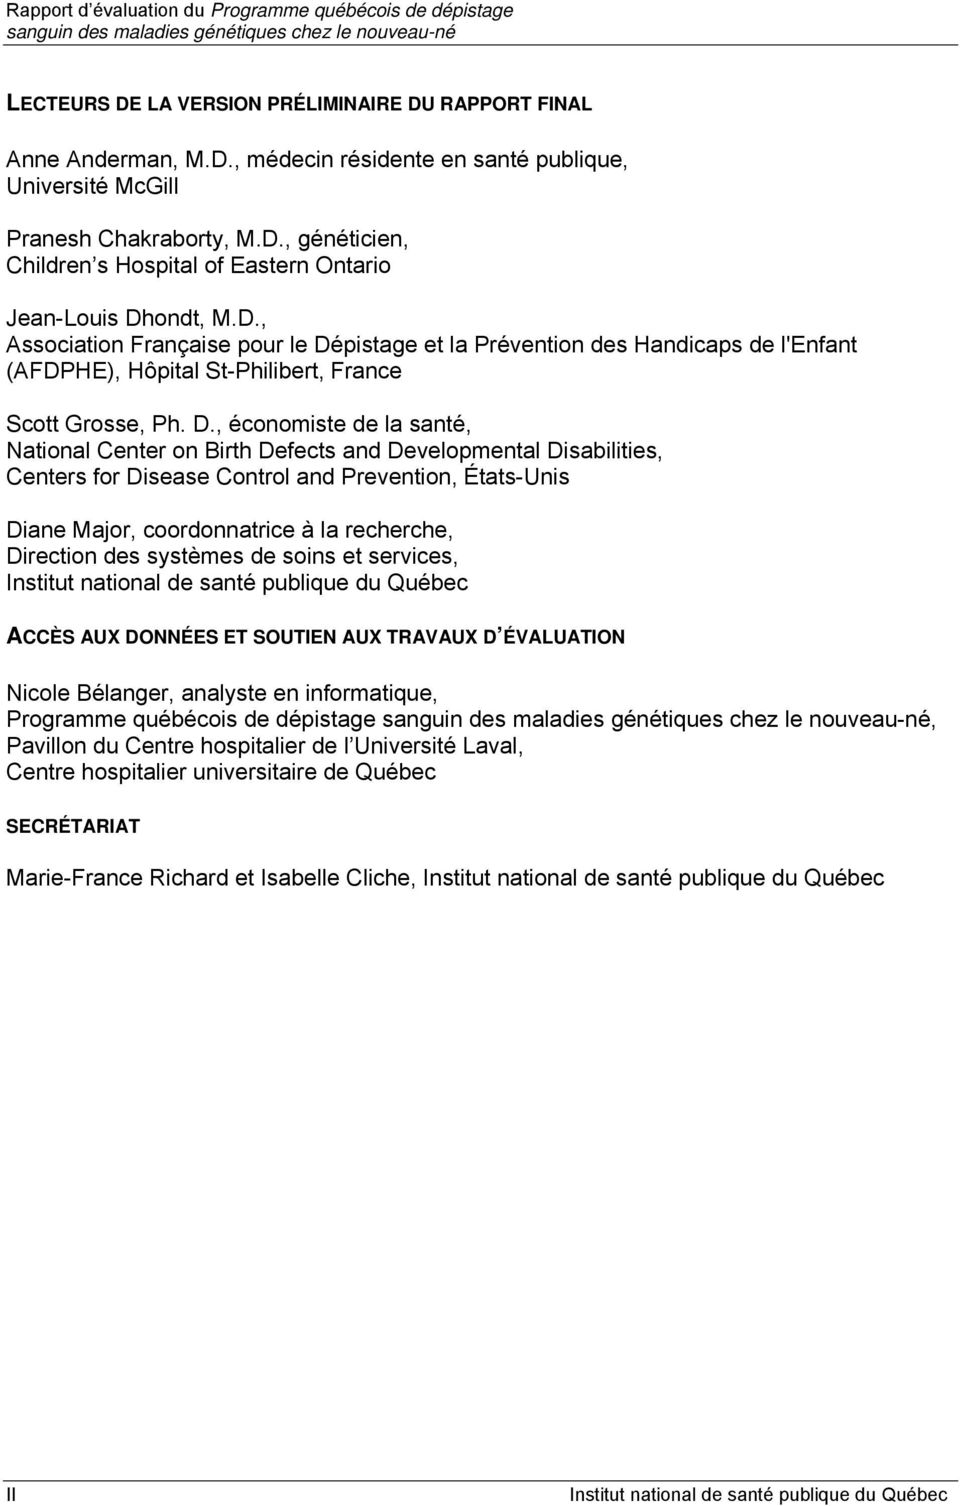 pistage et la Prévention des Handicaps de l'enfant (AFDPHE), Hôpital St-Philibert, France Scott Grosse, Ph. D.